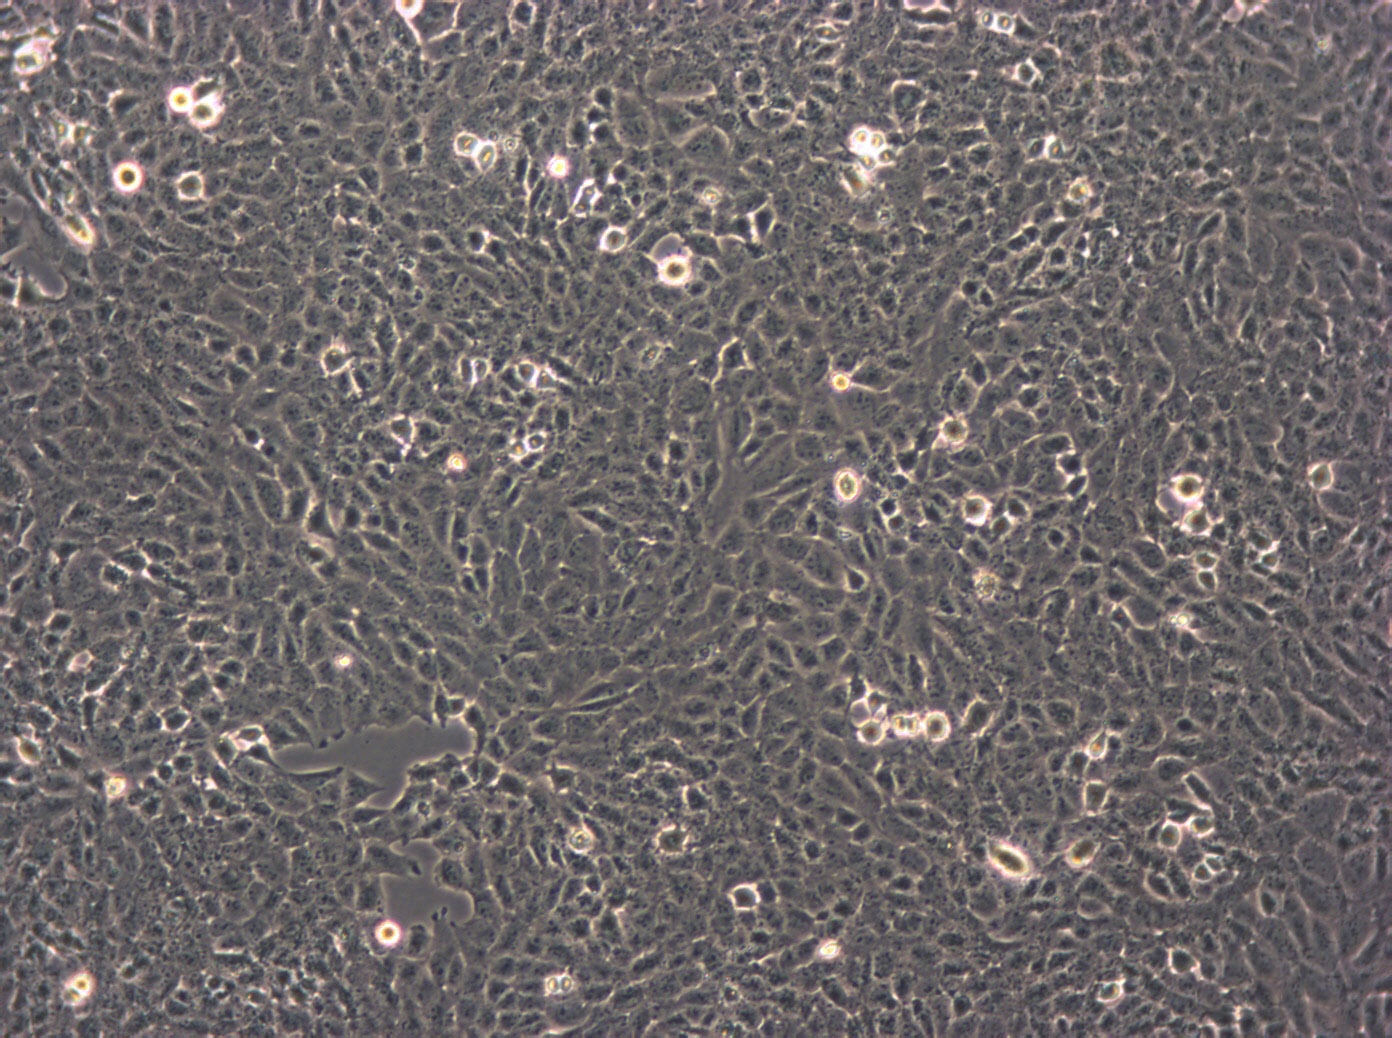 SK-LU-1 Cell:人低分化肺腺癌细胞系,SK-LU-1 Cell